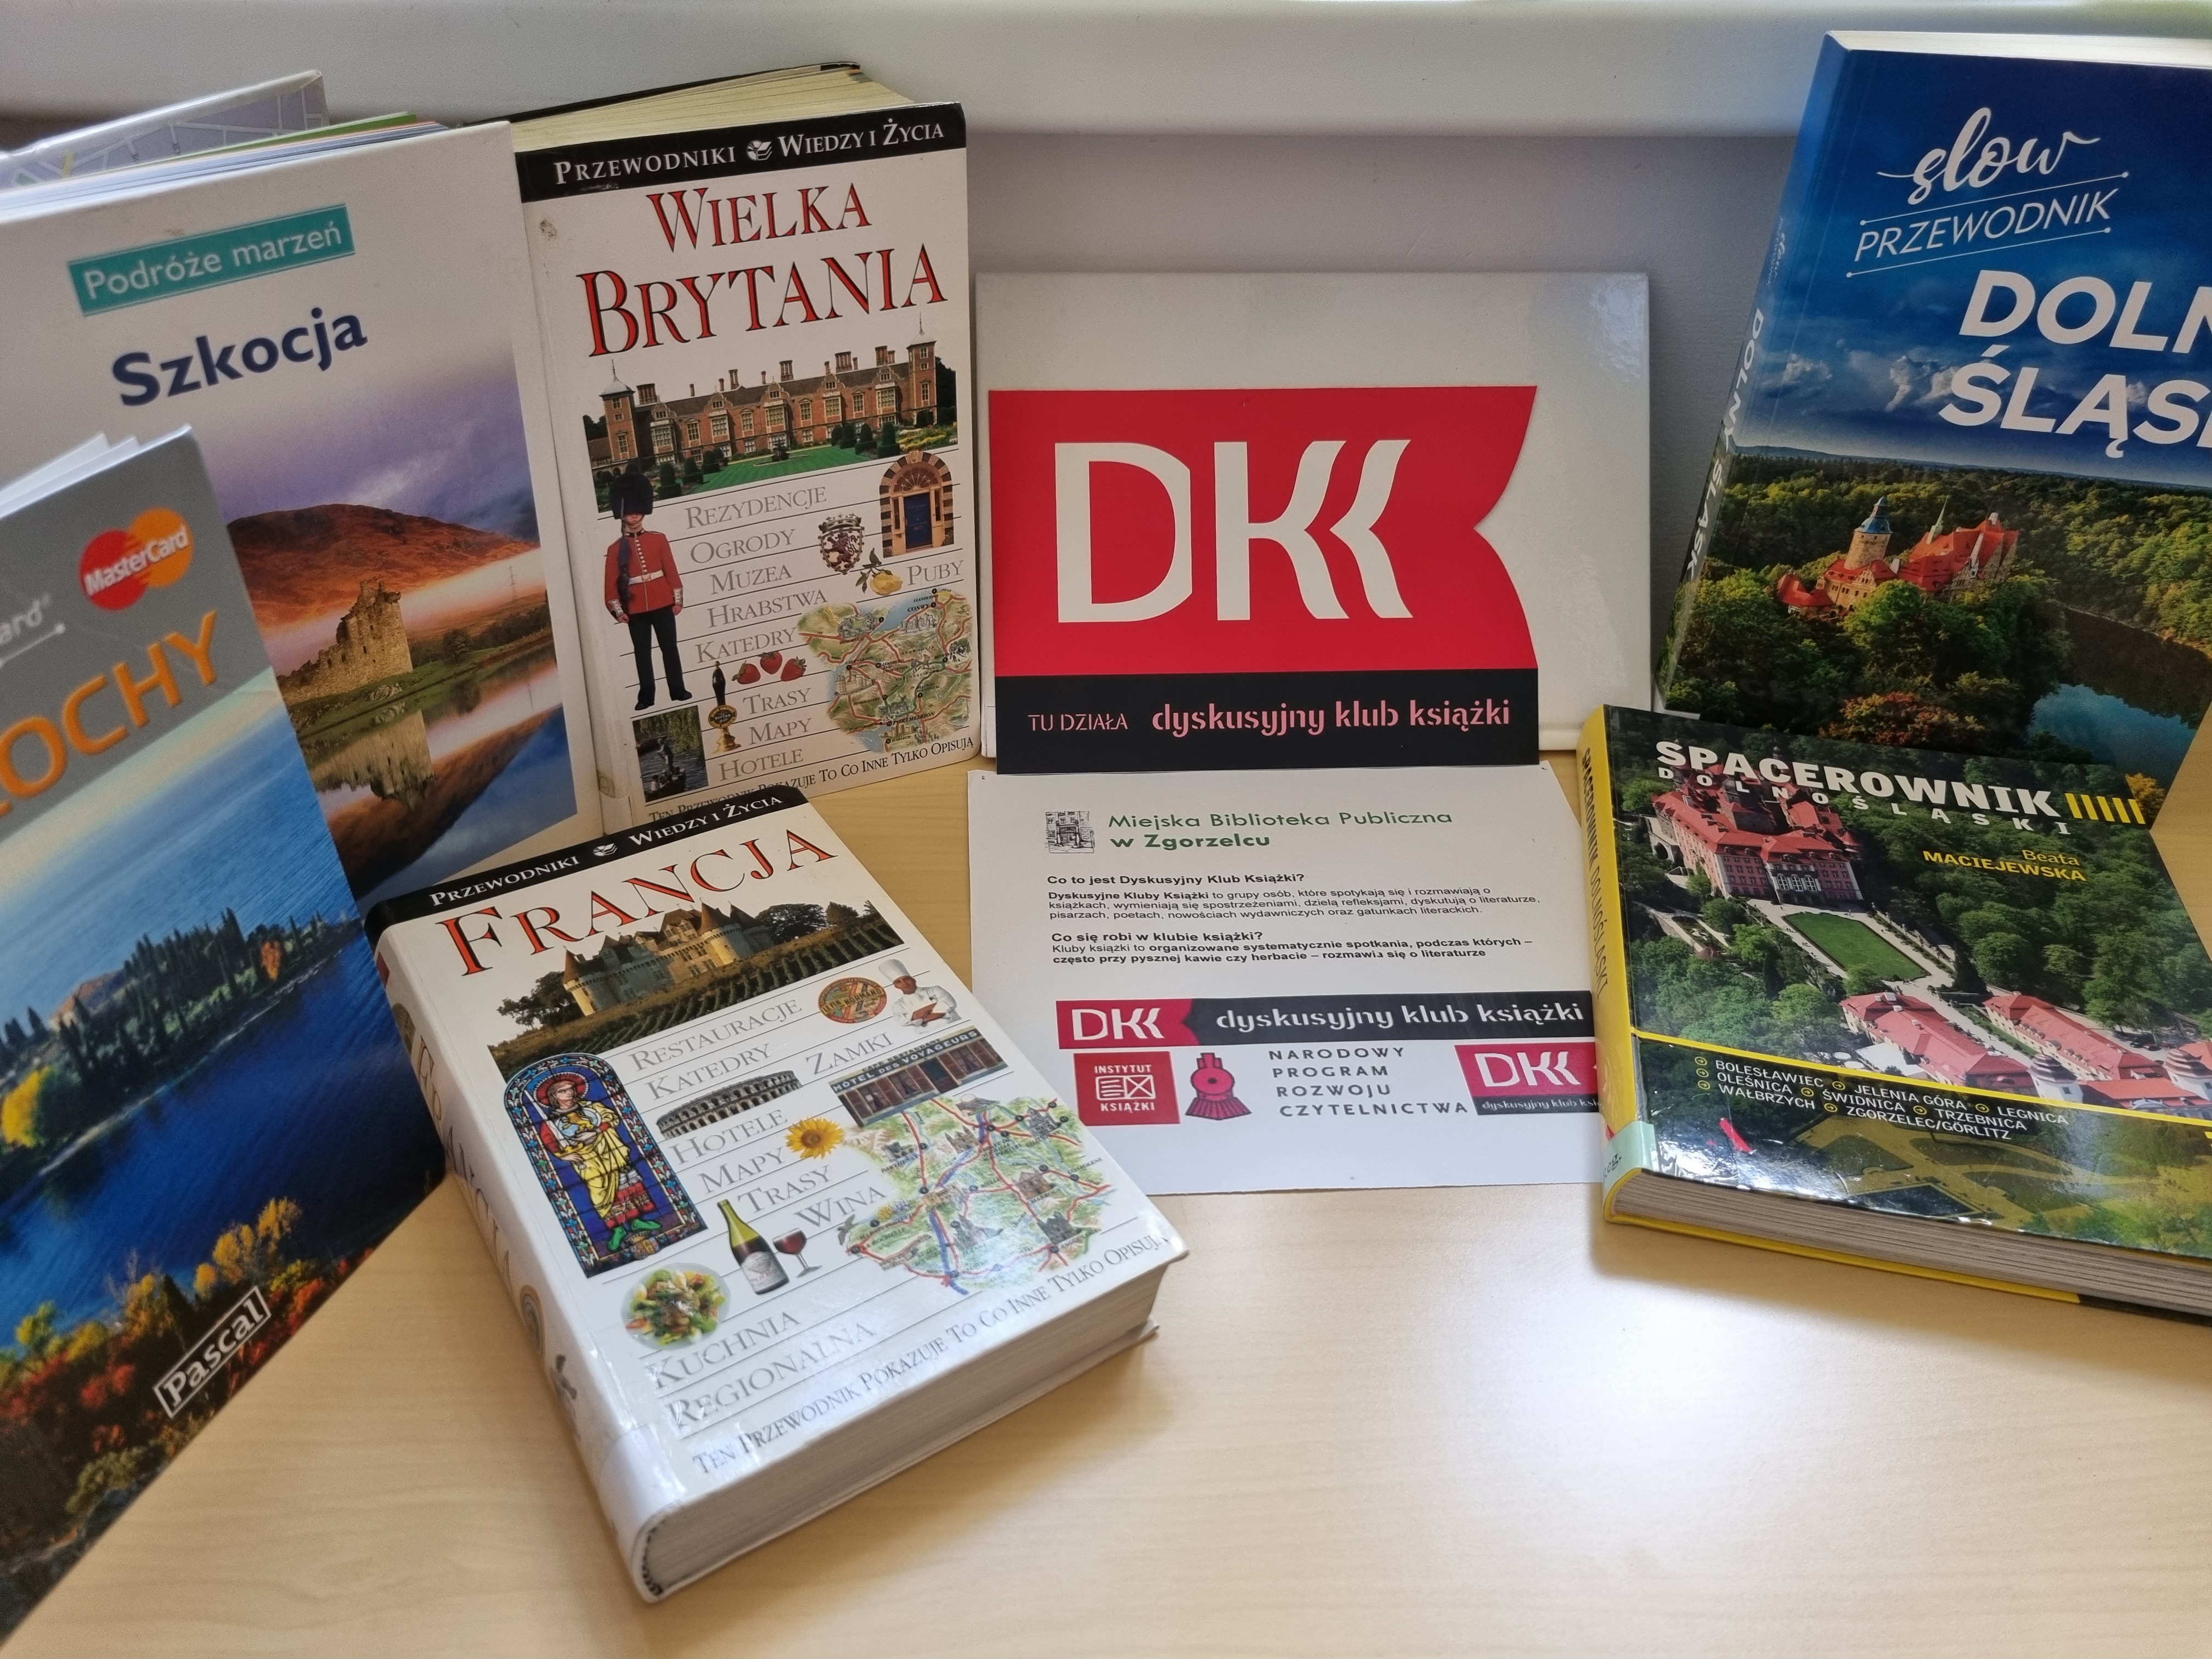 Na stole z jasnego drewna leżą książki podróżnicze i przewodniki po różnych krajach oraz kartka z informacją o klubie DKK.